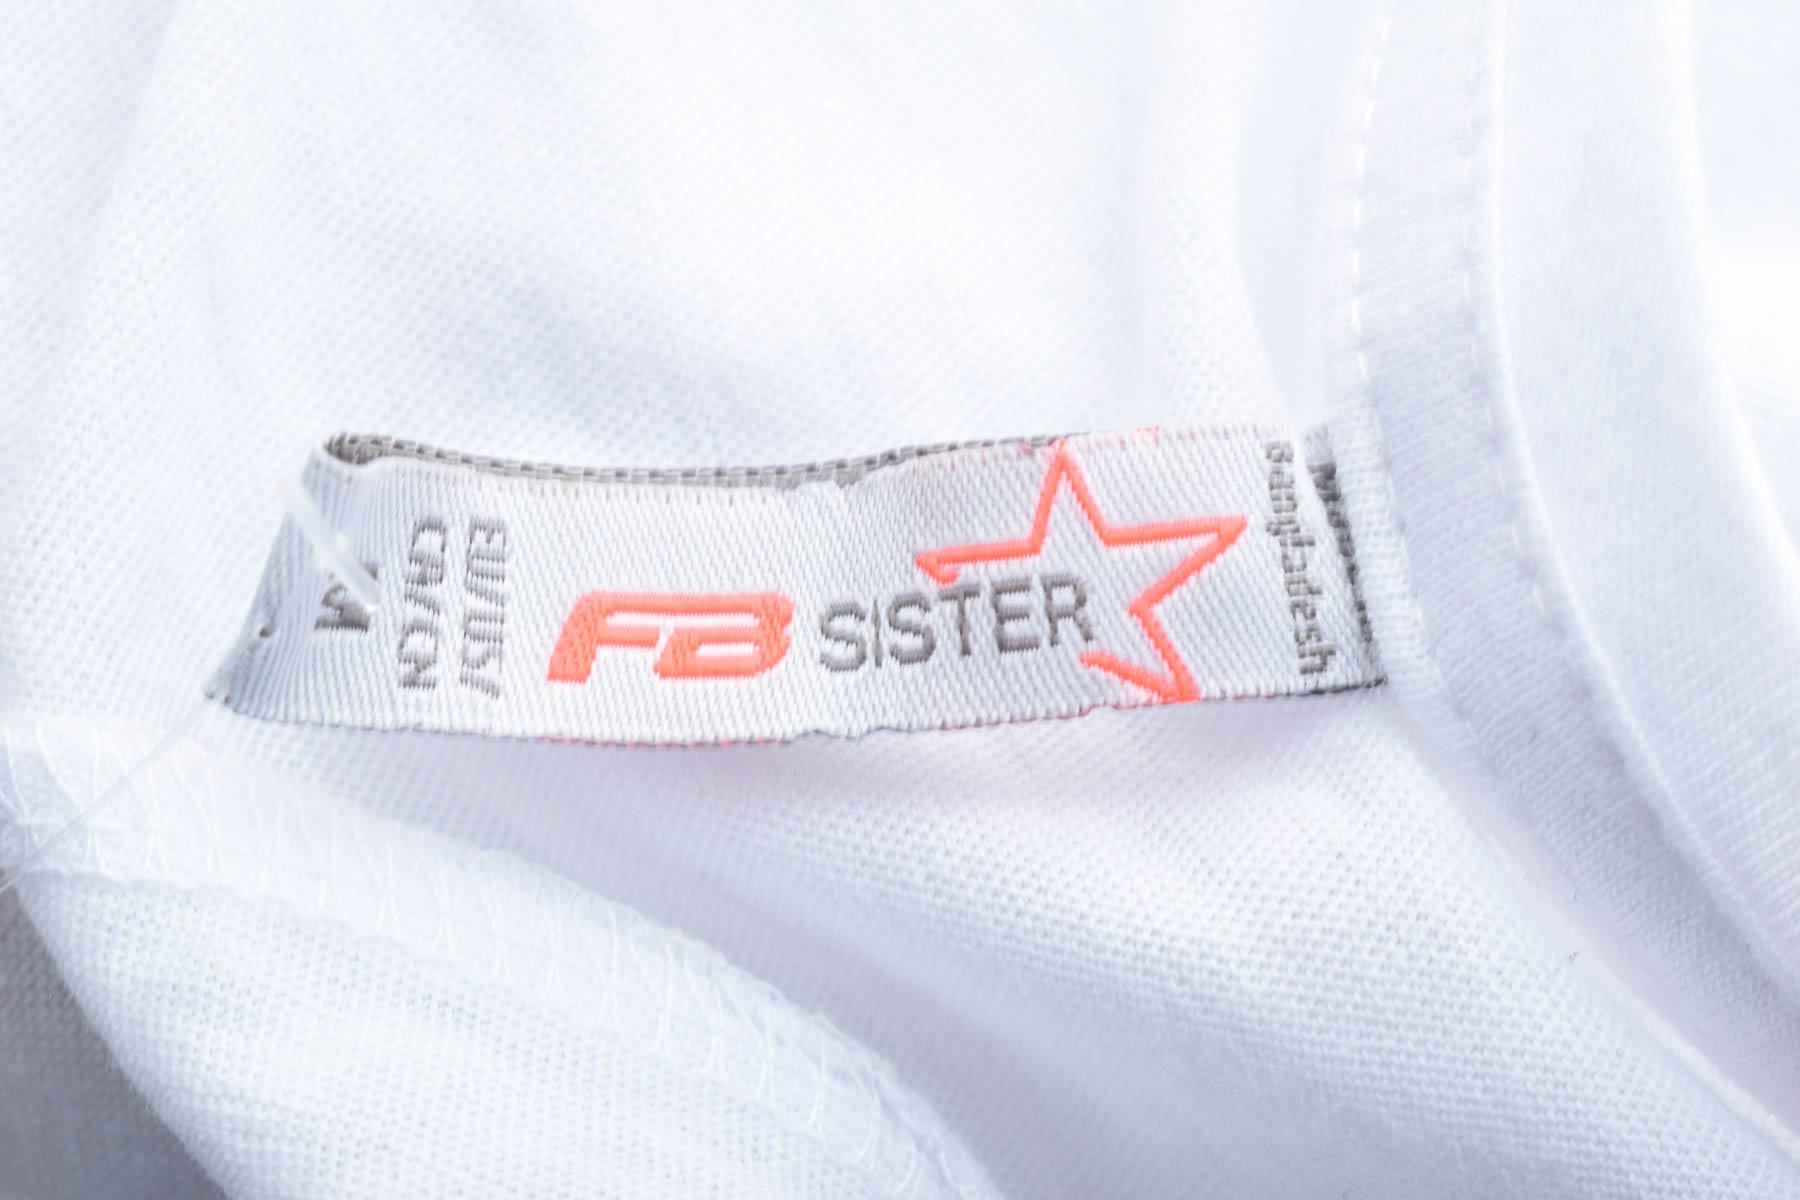 Дамска тениска - FB Sister - 2